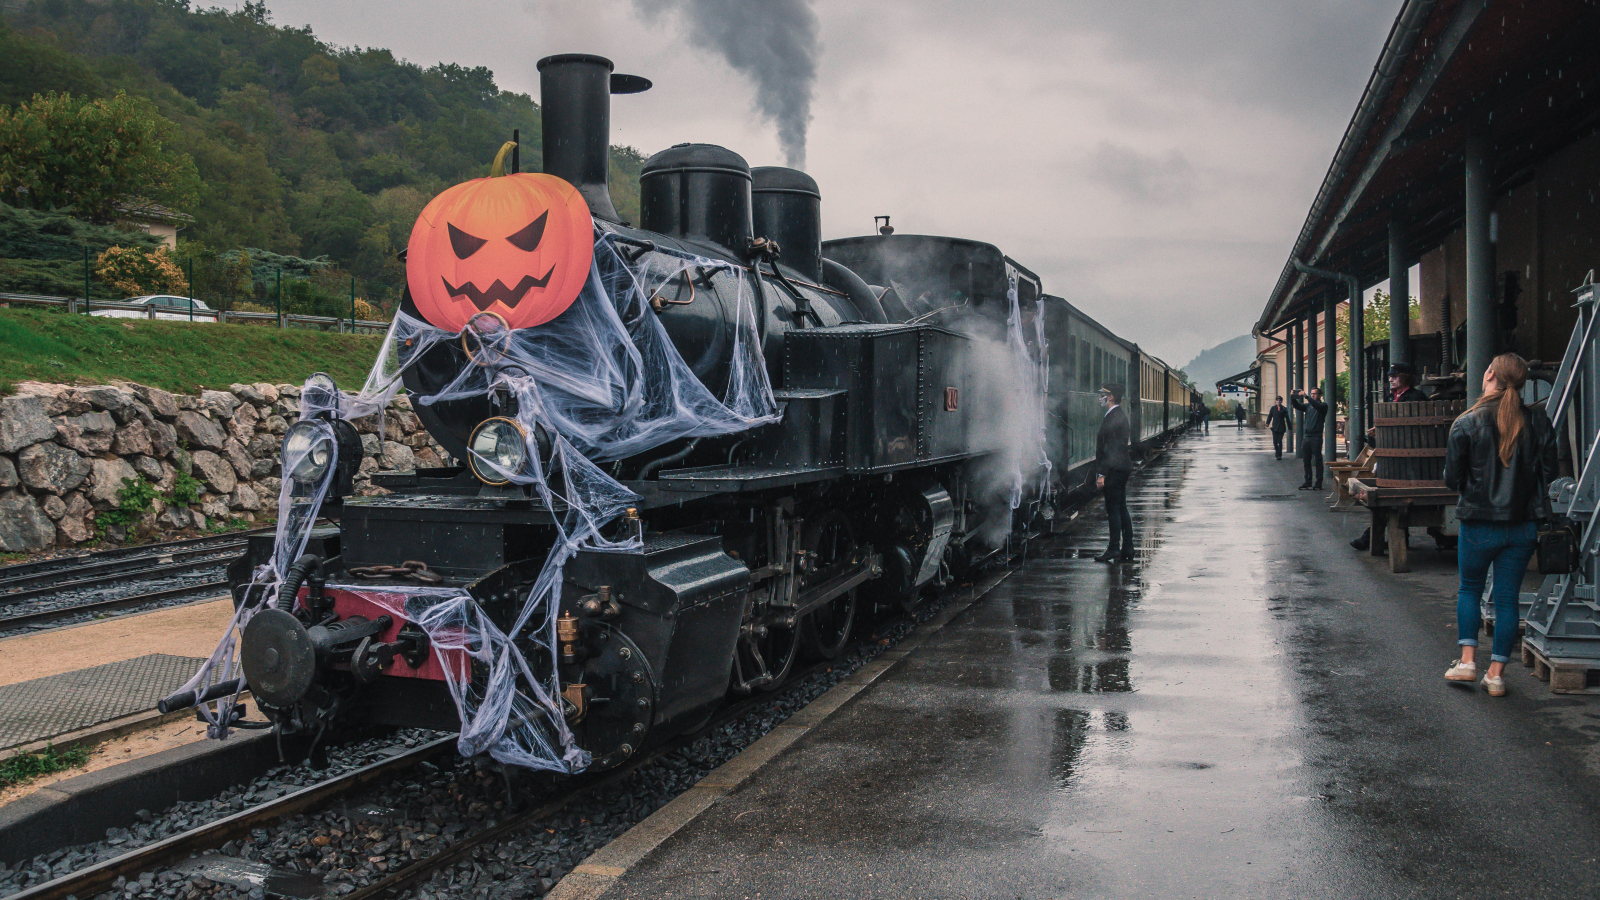 Train fantôme pour Halloween